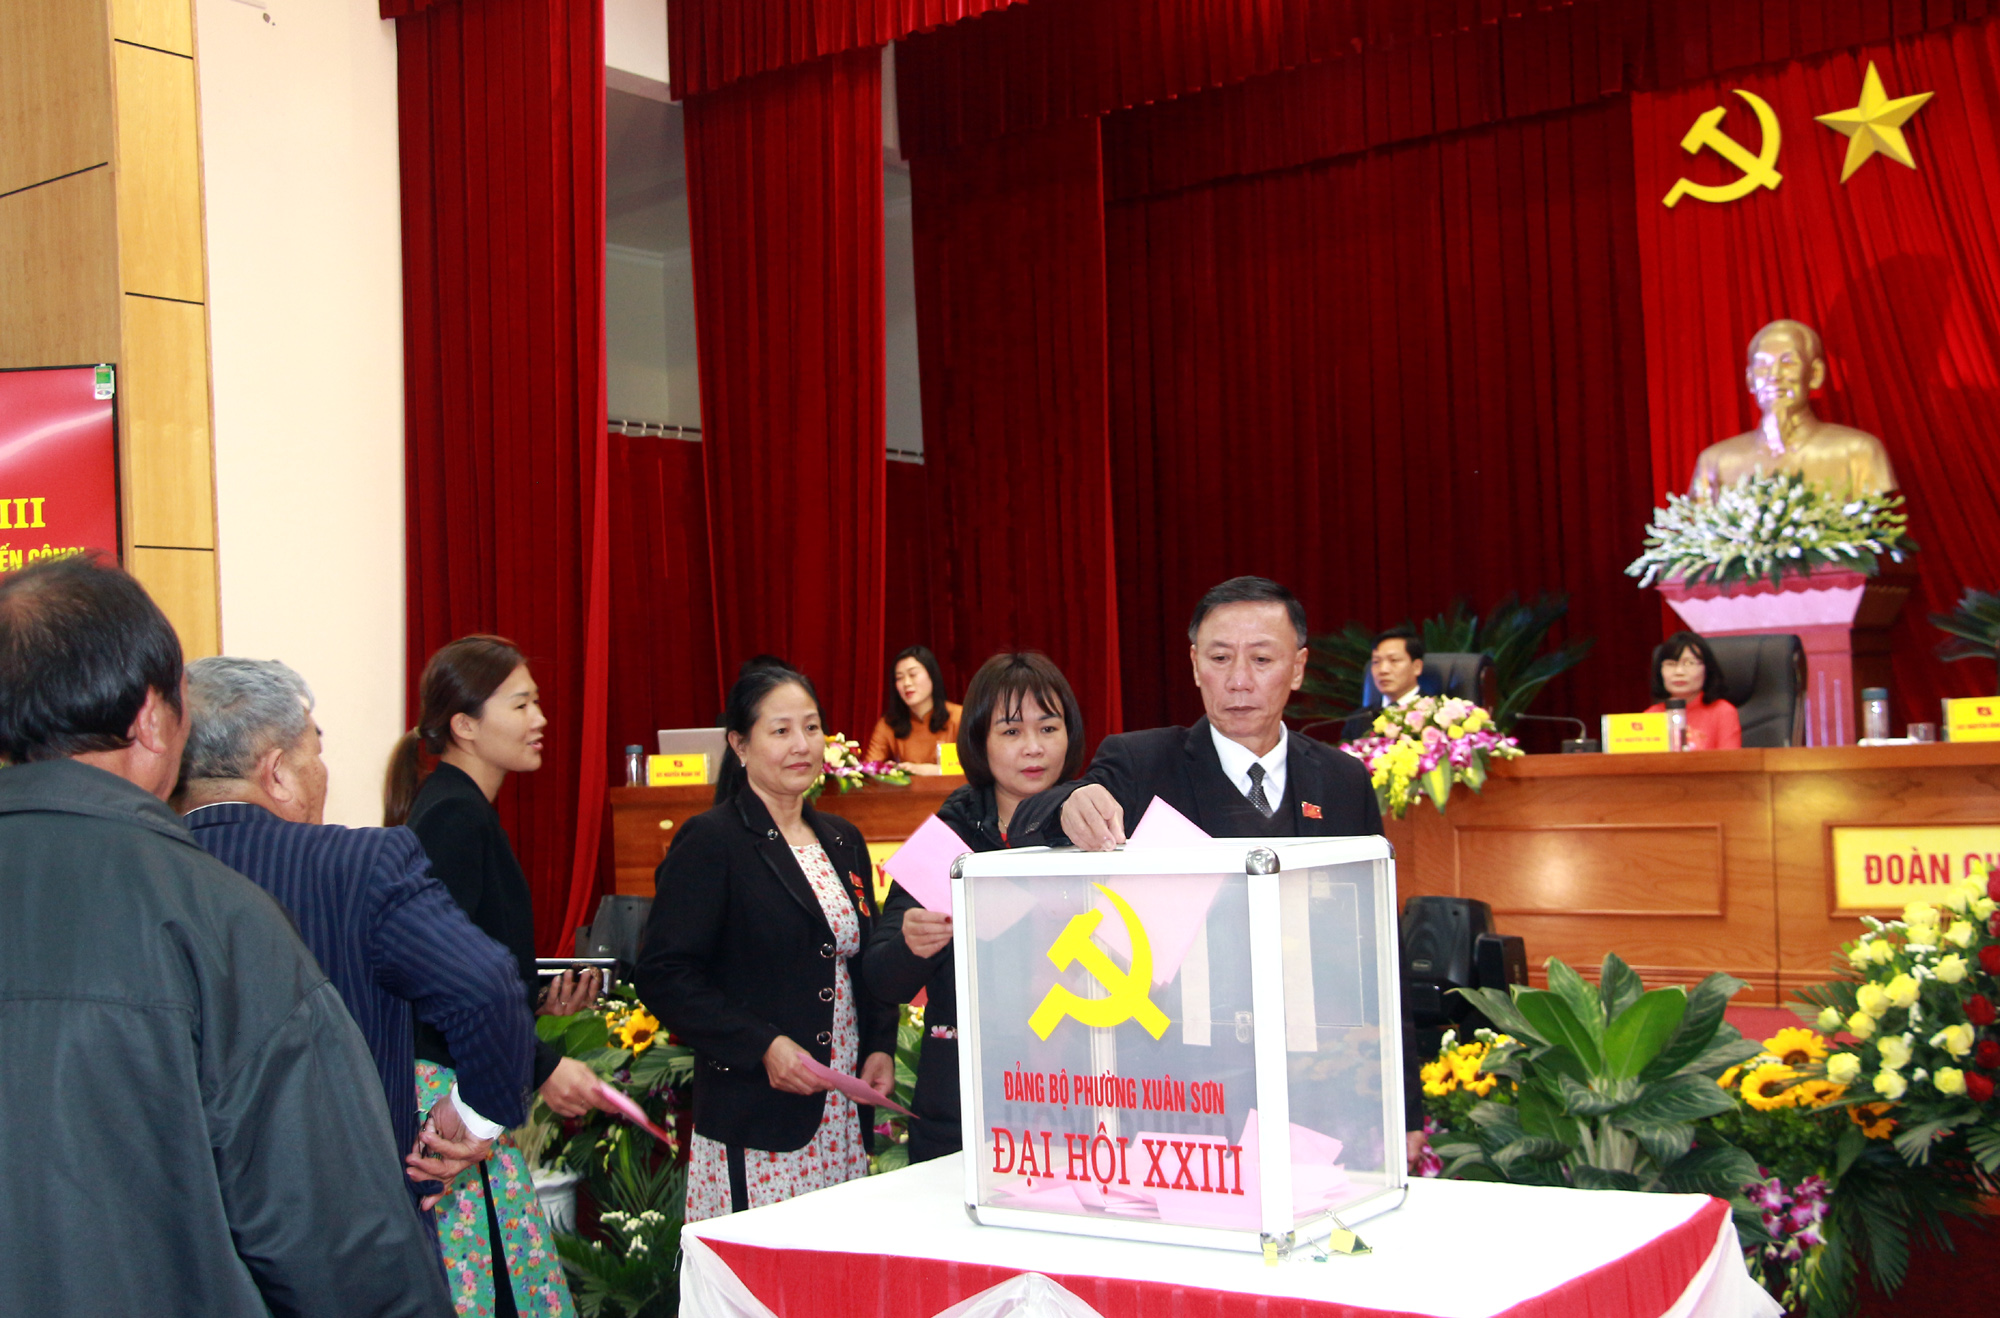 Các đại biểu bỏ phiếu bầu Bí thư Đảng ủy và Ban Chấp hành Đảng bộ phường Xuân Sơn lần thứ XXIII, nhiệm kỳ 2020-2025.